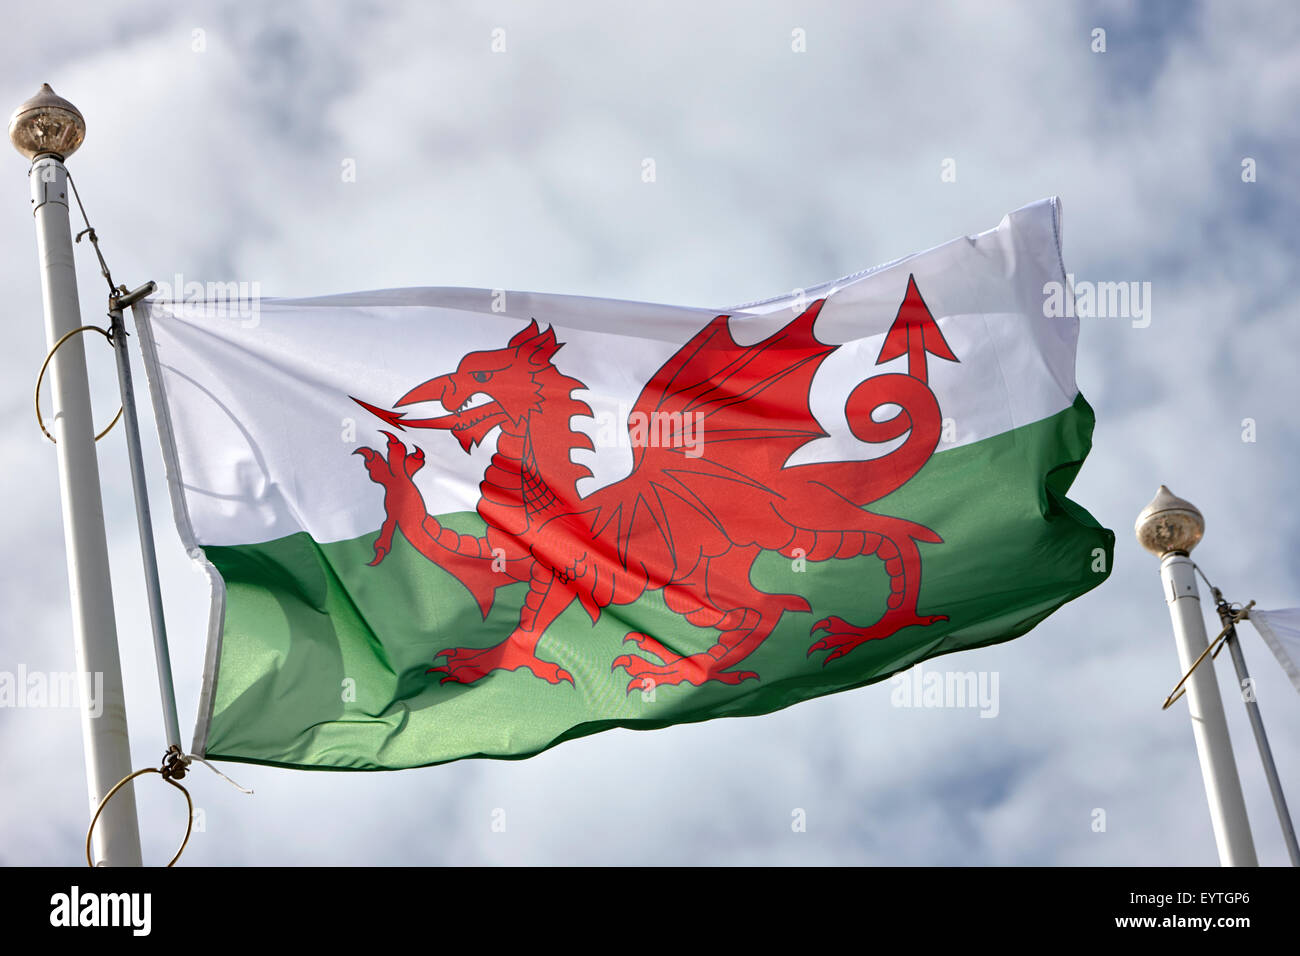 Le dragon rouge, le drapeau national du pays de Galles Banque D'Images